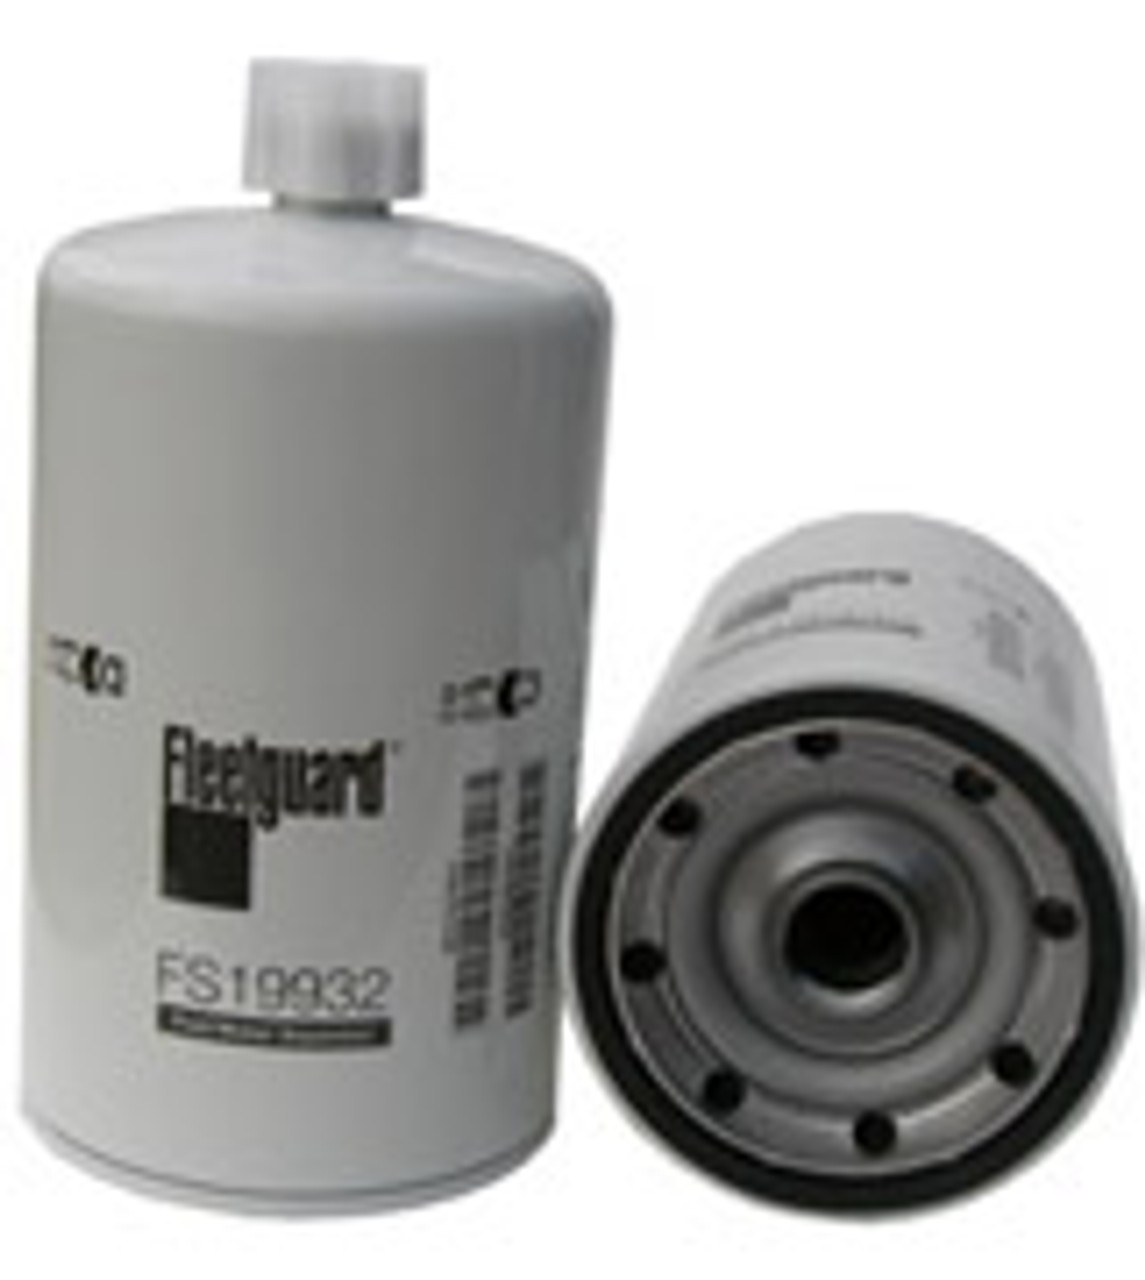 FS19932: Fleetguard Fuel/Water Separator